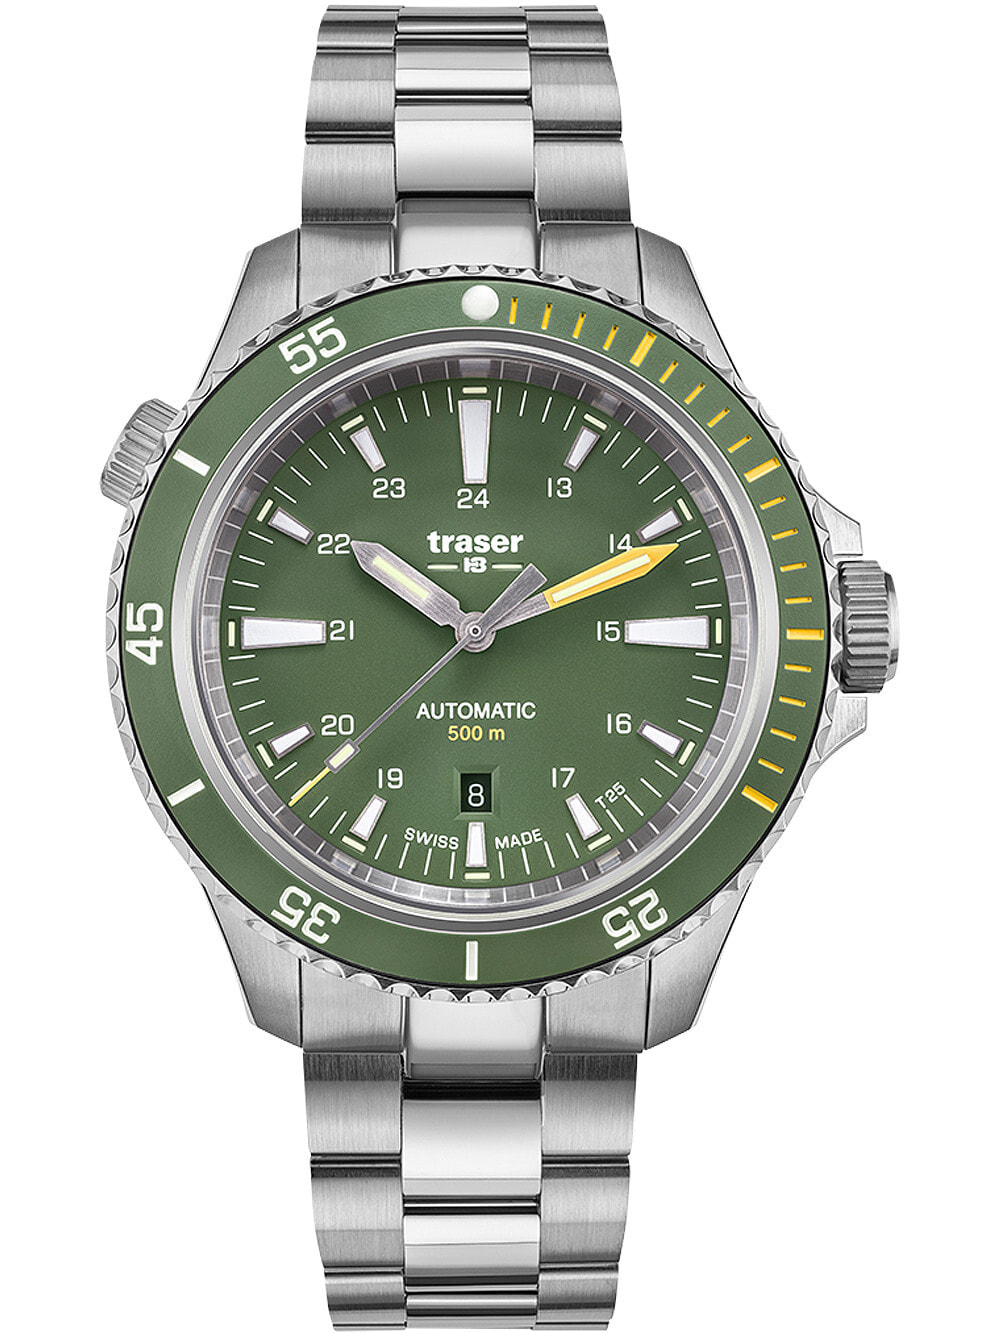 Мужские наручные часы с серебряным браслетом Traser H3 110325 P67 Diver Automatik Green Special Set 46mm 50ATM